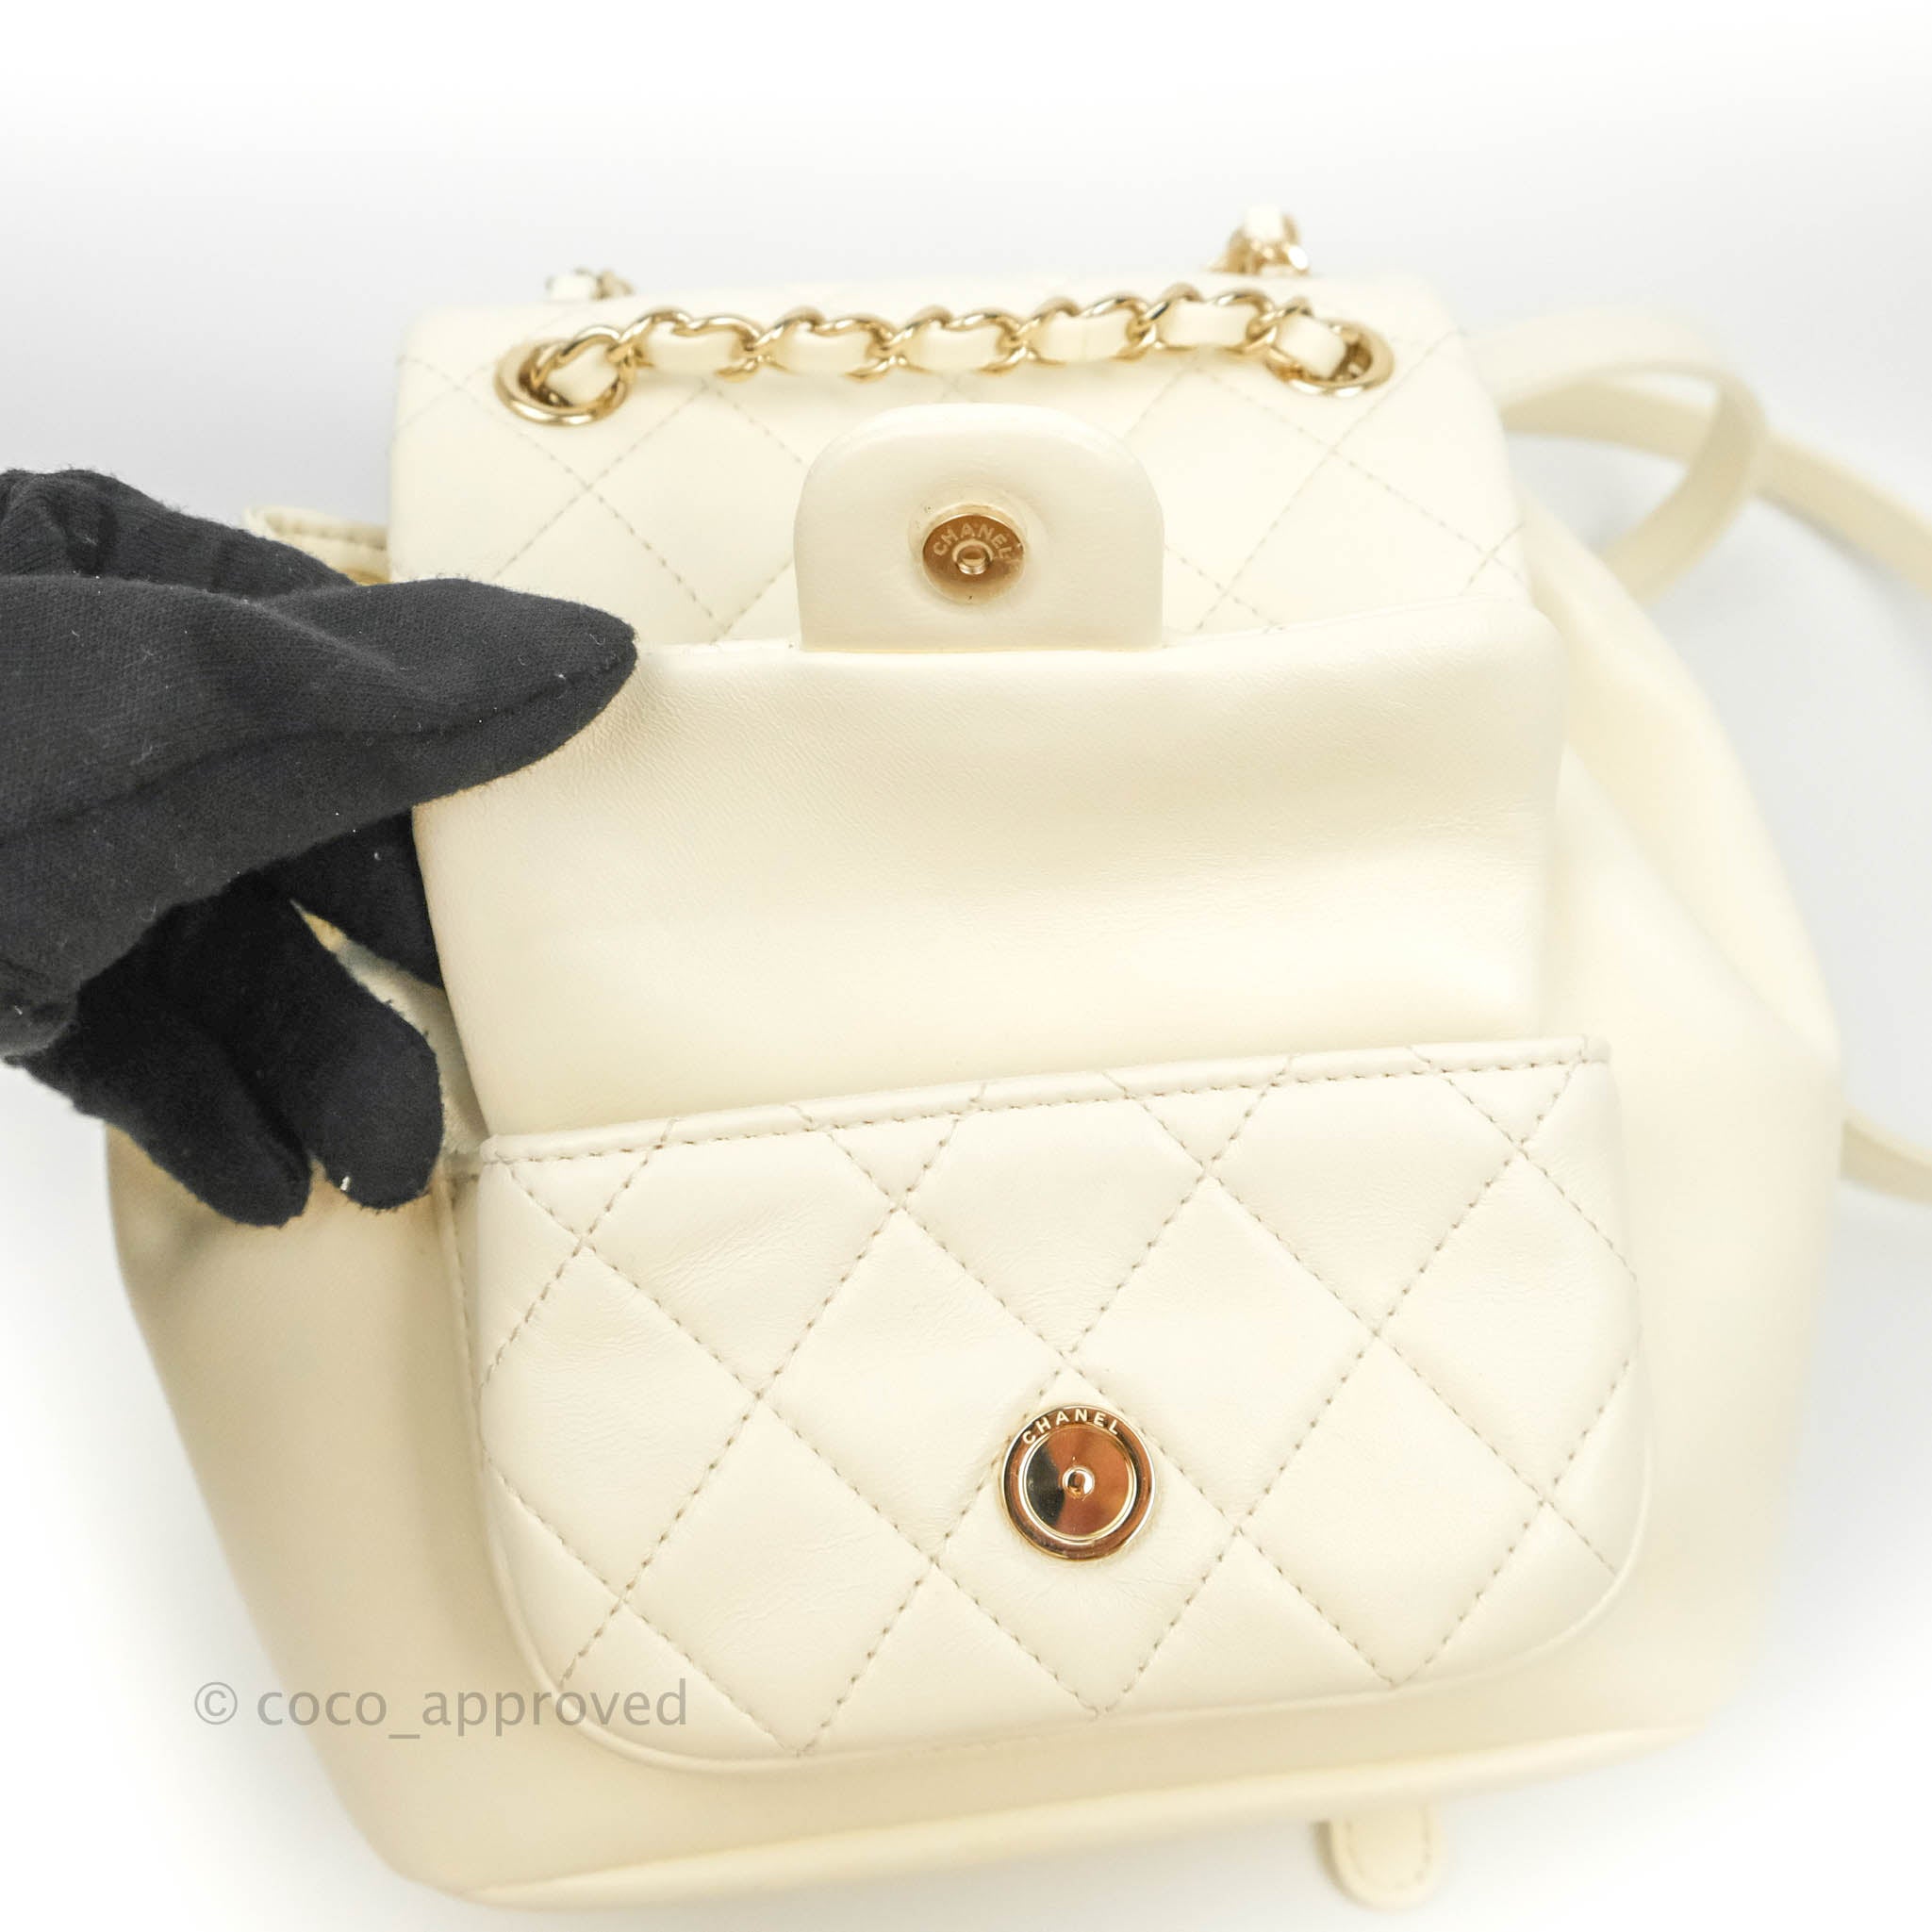 Vintage Chanel Backpacks - 141 For Sale at 1stDibs  chanel back packs, chanel  mini bagpack, chanel backpacks for sale